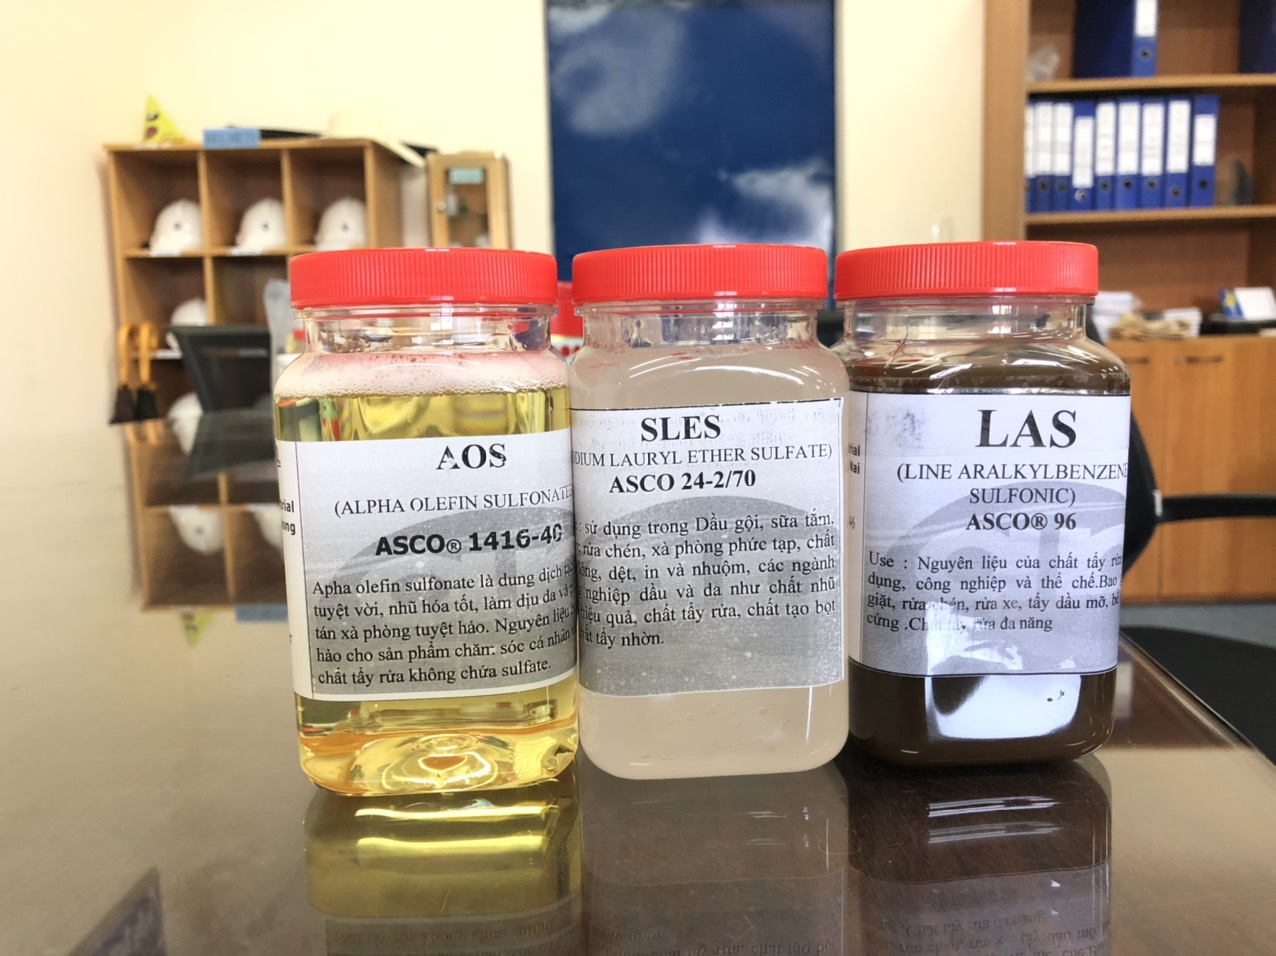 Sự khác biệt về số lượng phân tử epoxyethane (EO) trong SLES dẫn đến chức năng và ứng dụng khác nhau.